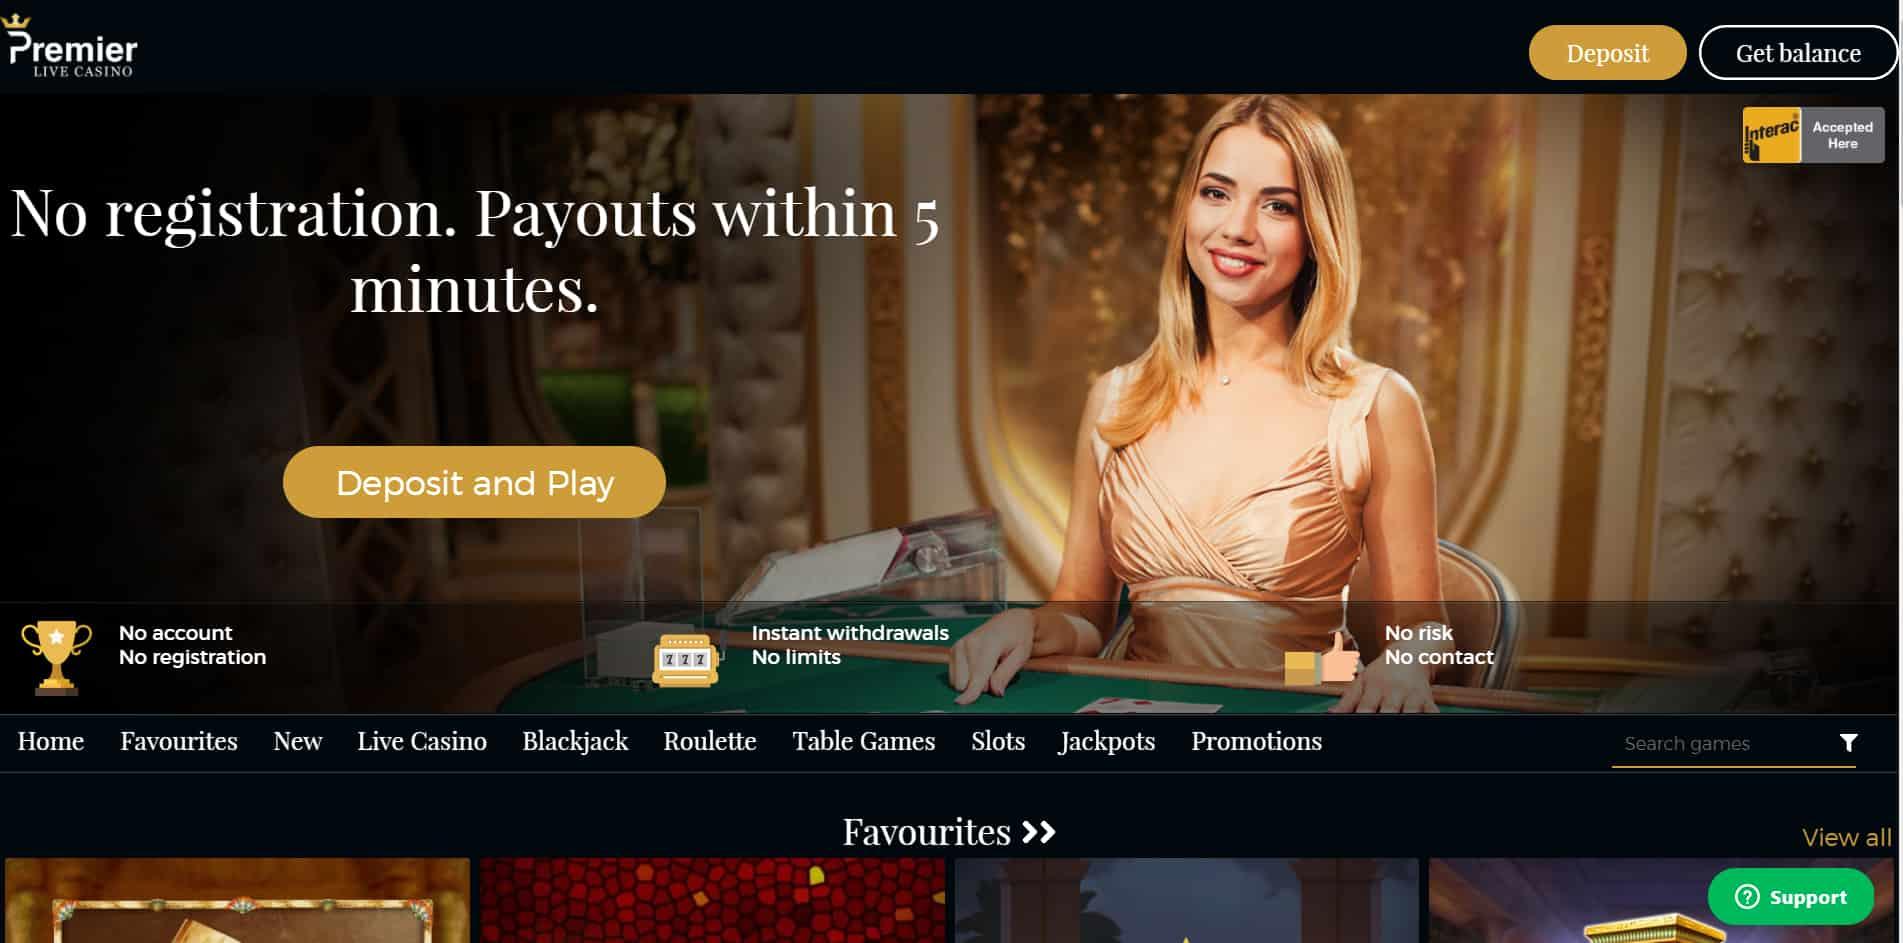 Premier Live casino homepage